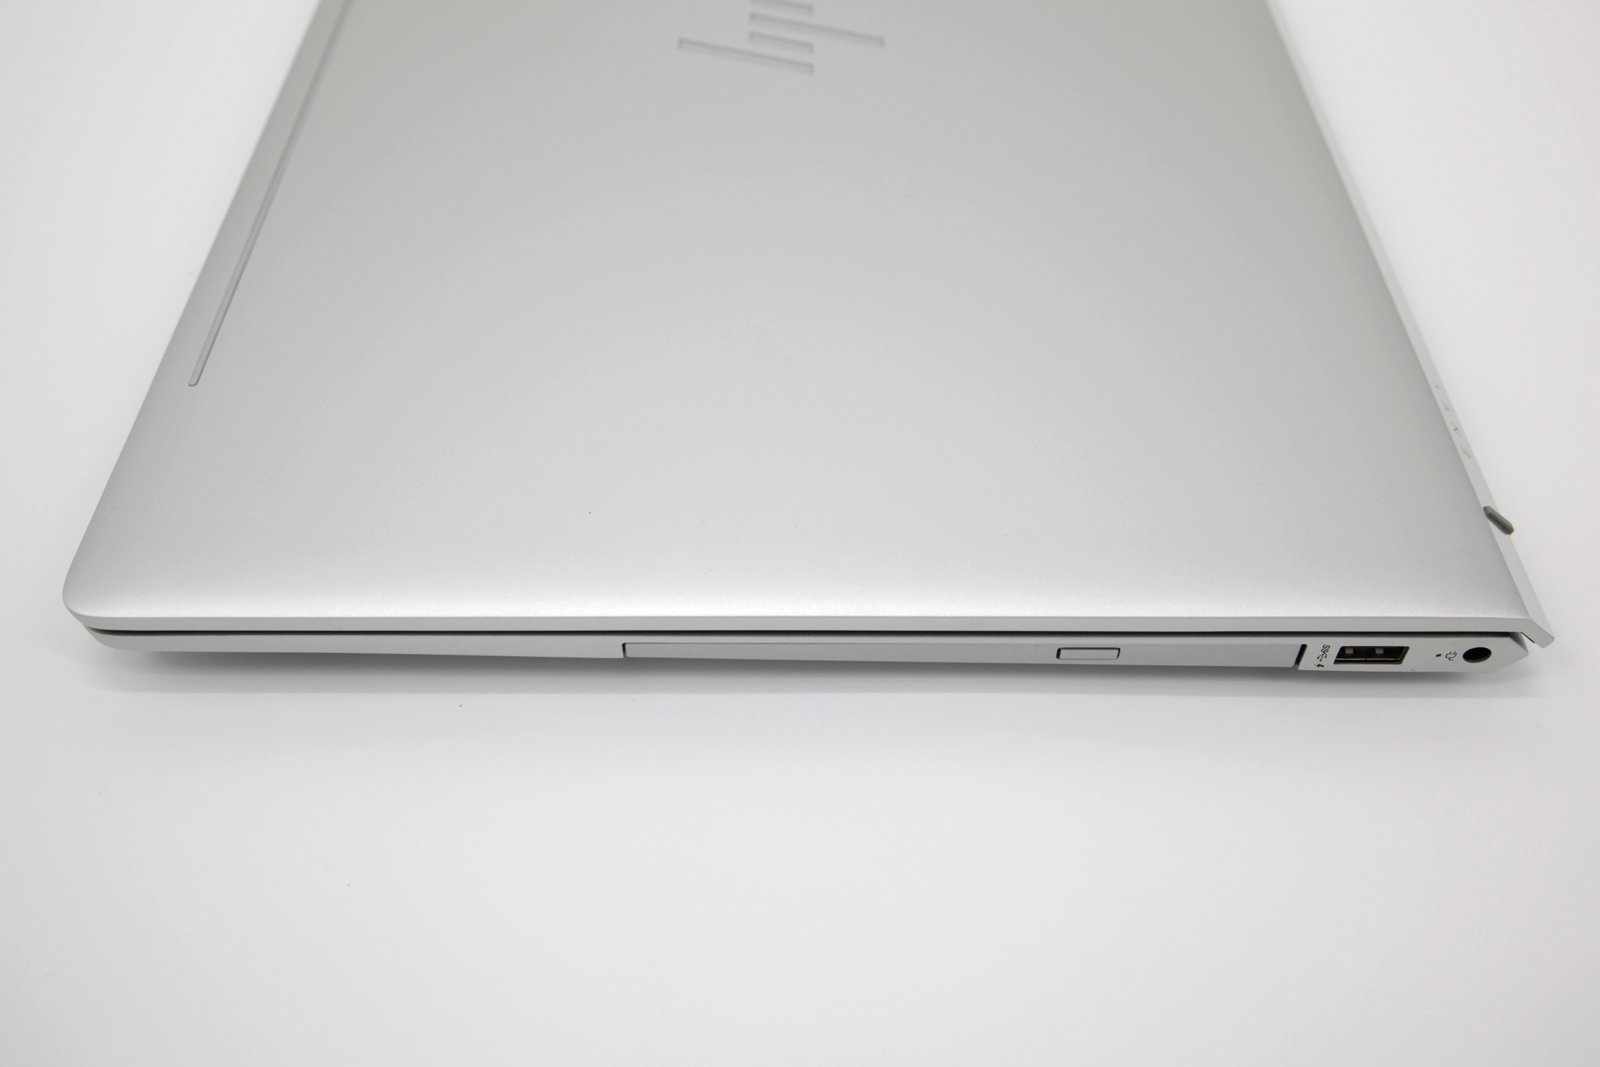 HP Envy 17 4K Laptop: Core i7-8550U, MX150, 16GB RAM, 256GB + 1TB HDD - CruiseTech